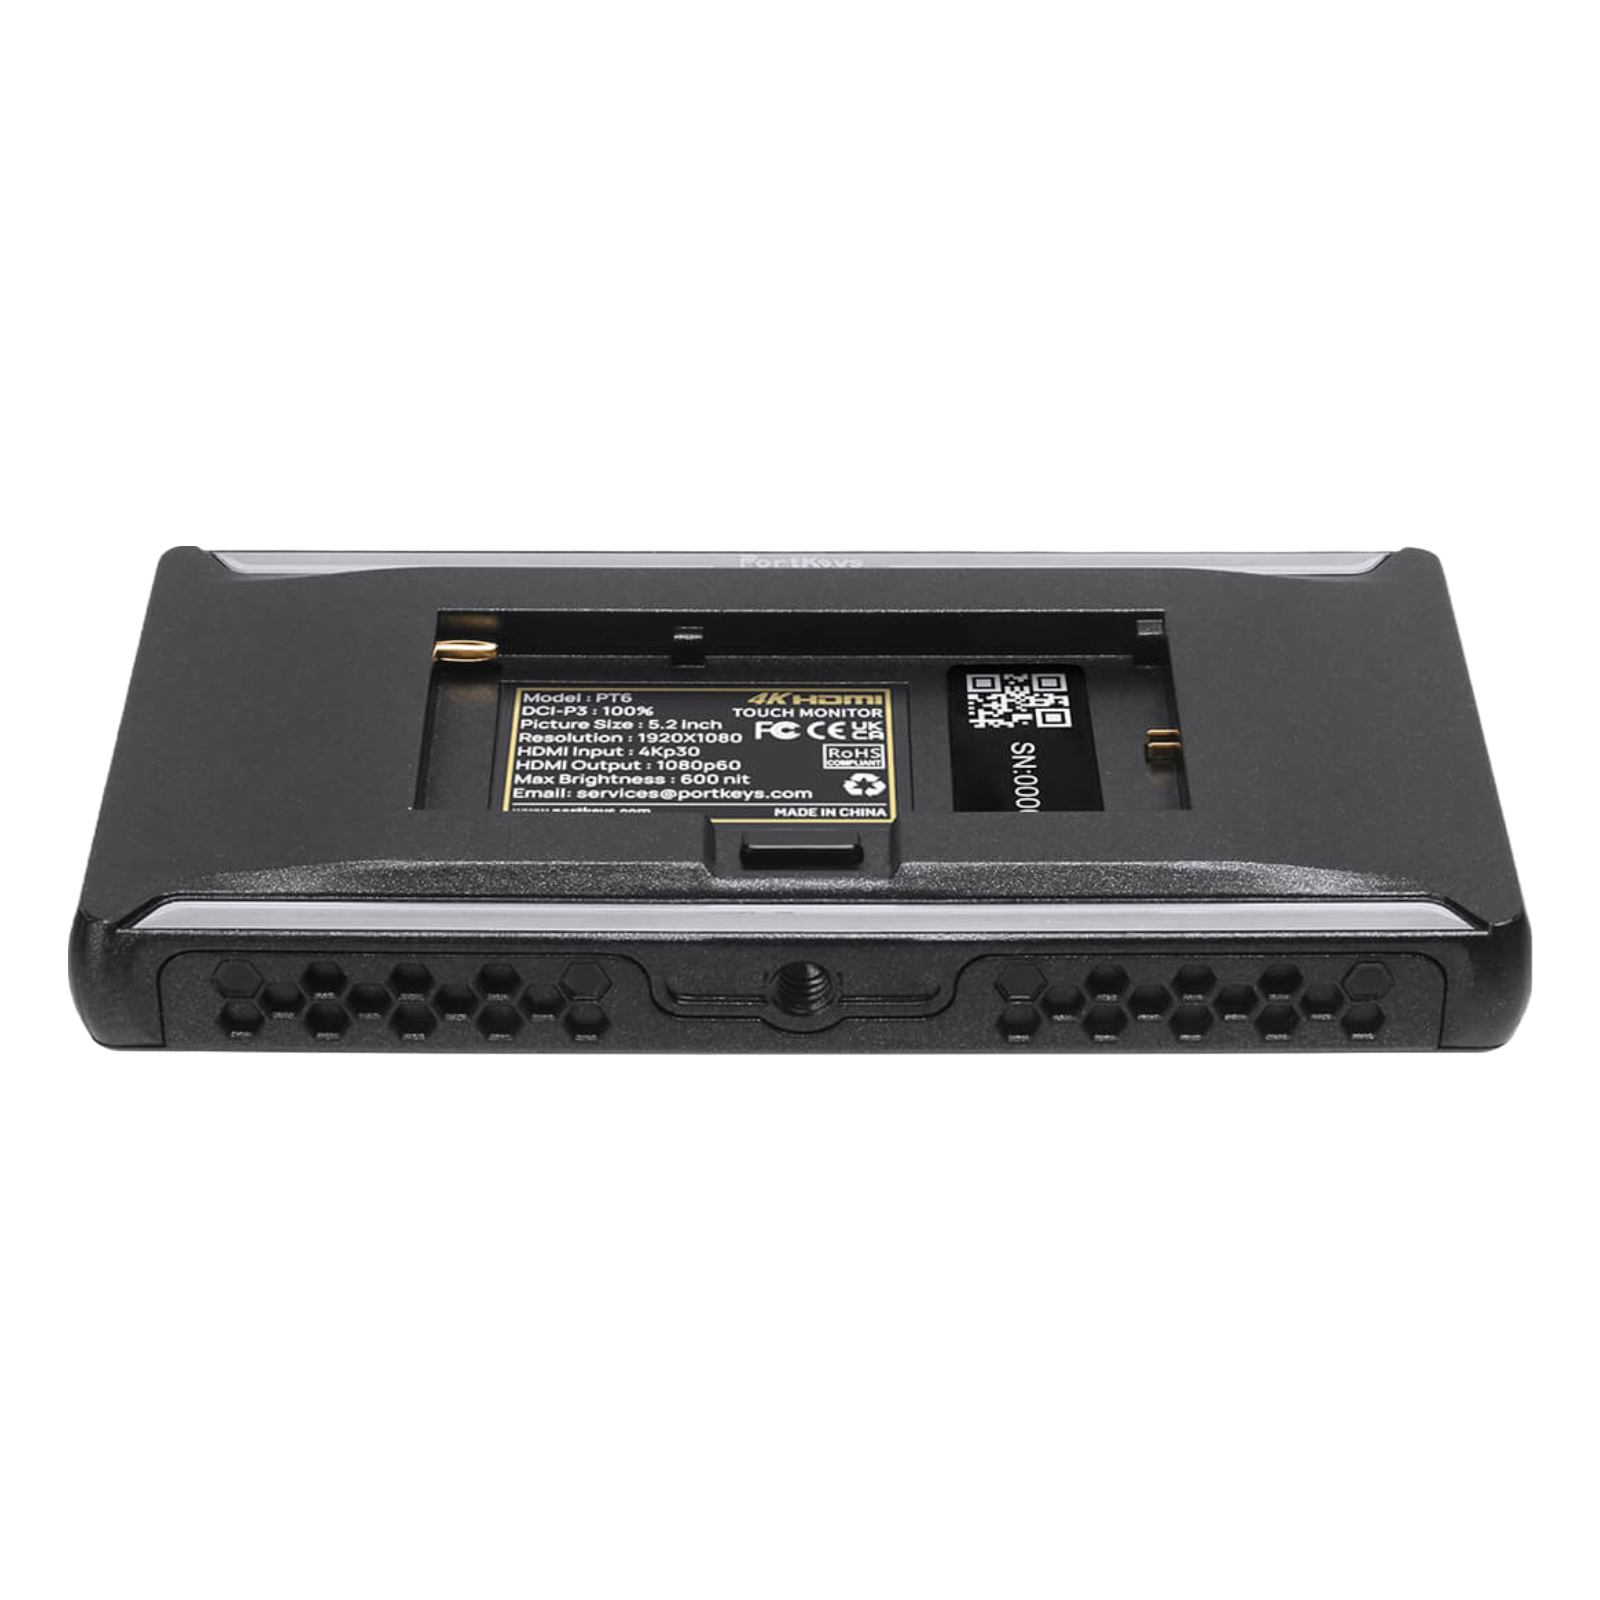  Màn Hình Portkeys PT6 - 6'' 4K HDMI Touchscreen Monitor 